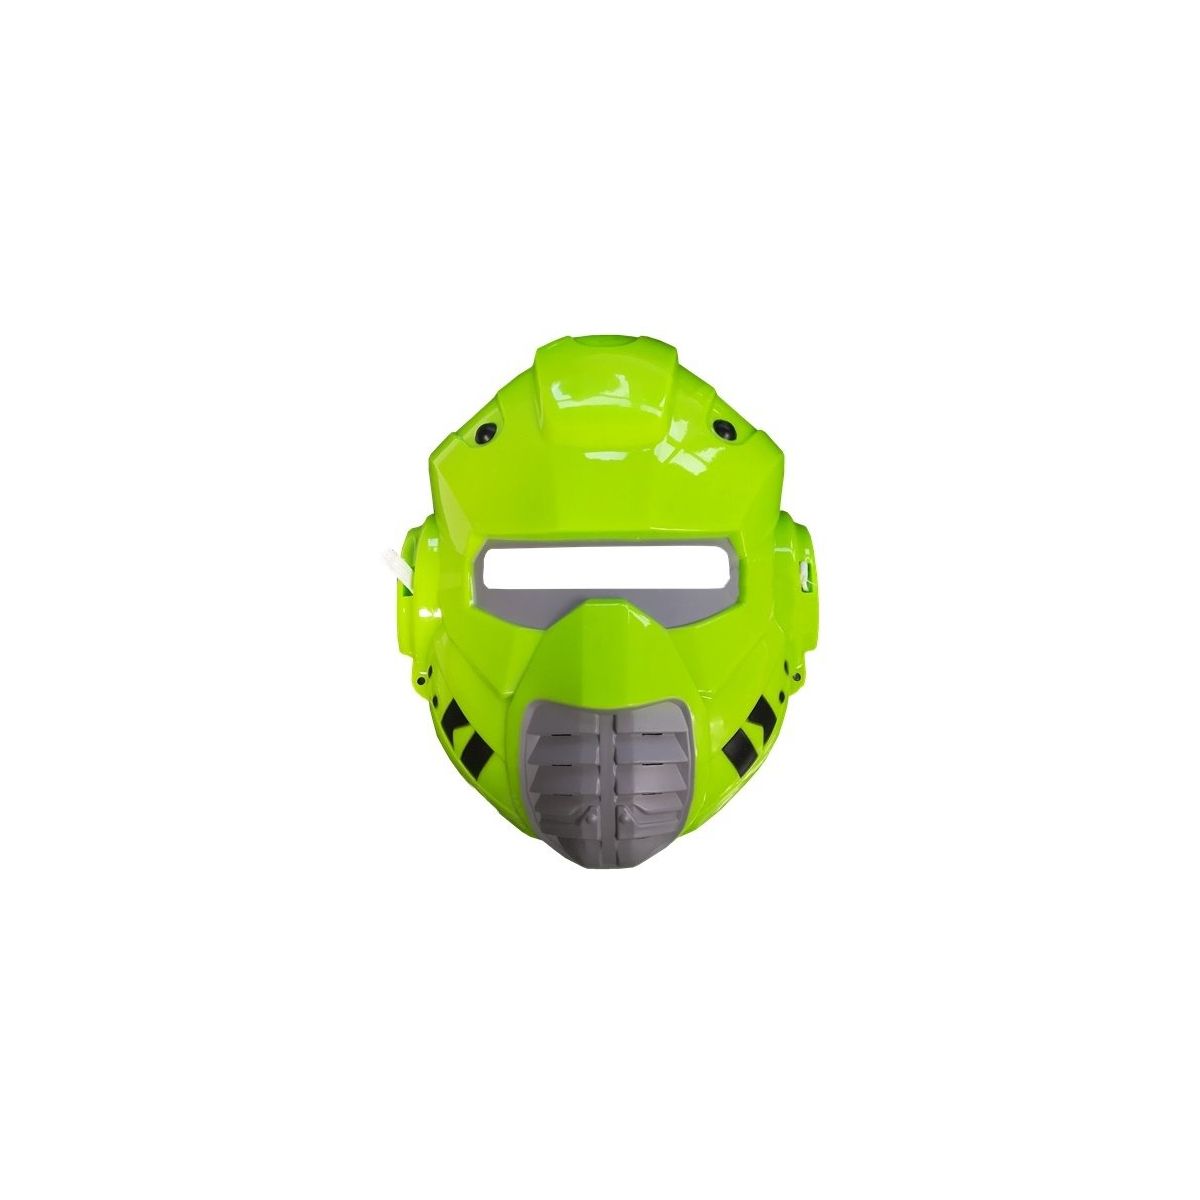 Miecz Lean Kosmiczna Miecz Maska Światło Zielona (4310)